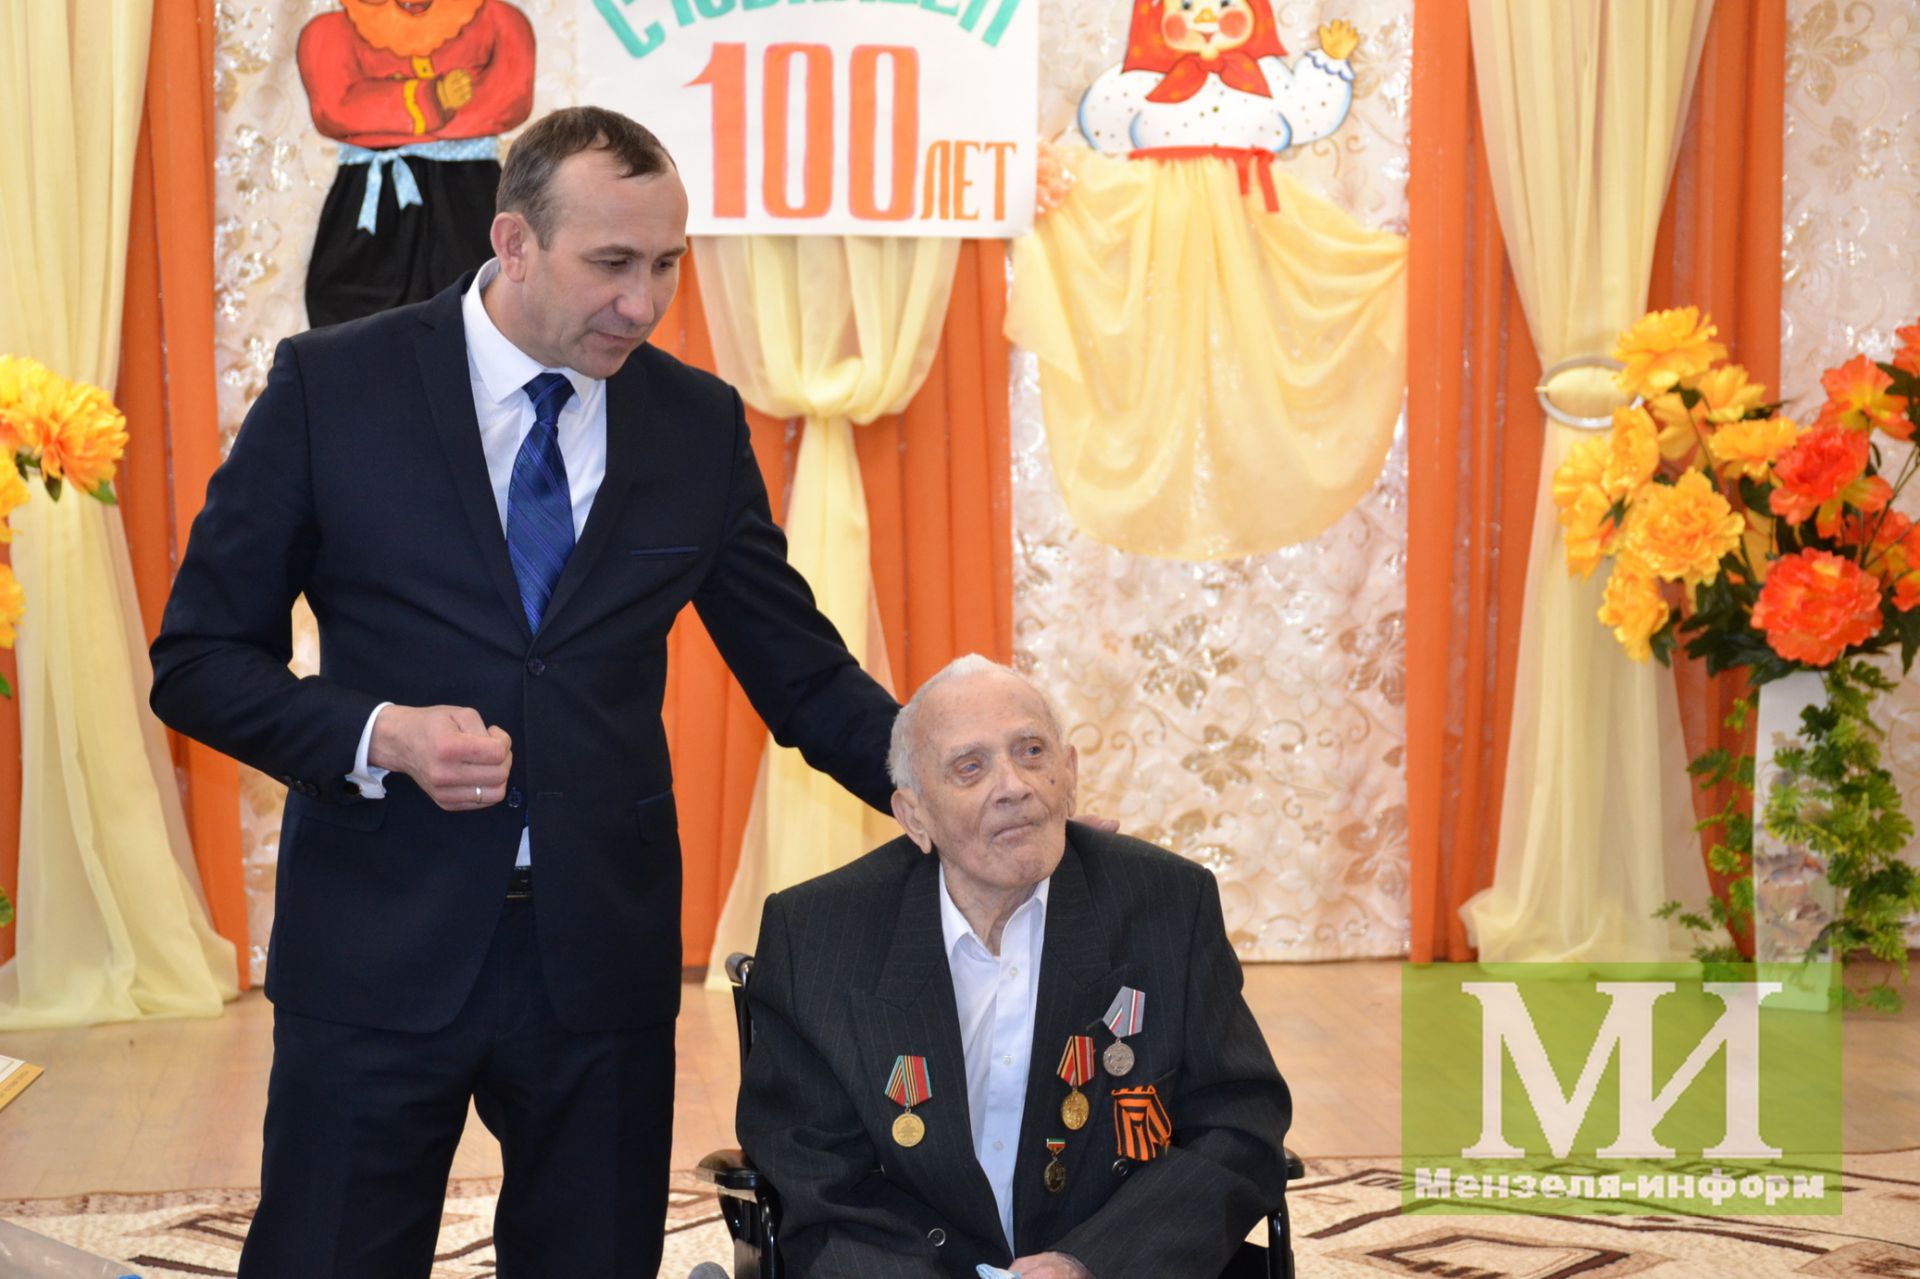 Ветерану ВОВ Михаилу Кузнецову исполнилось 100 лет